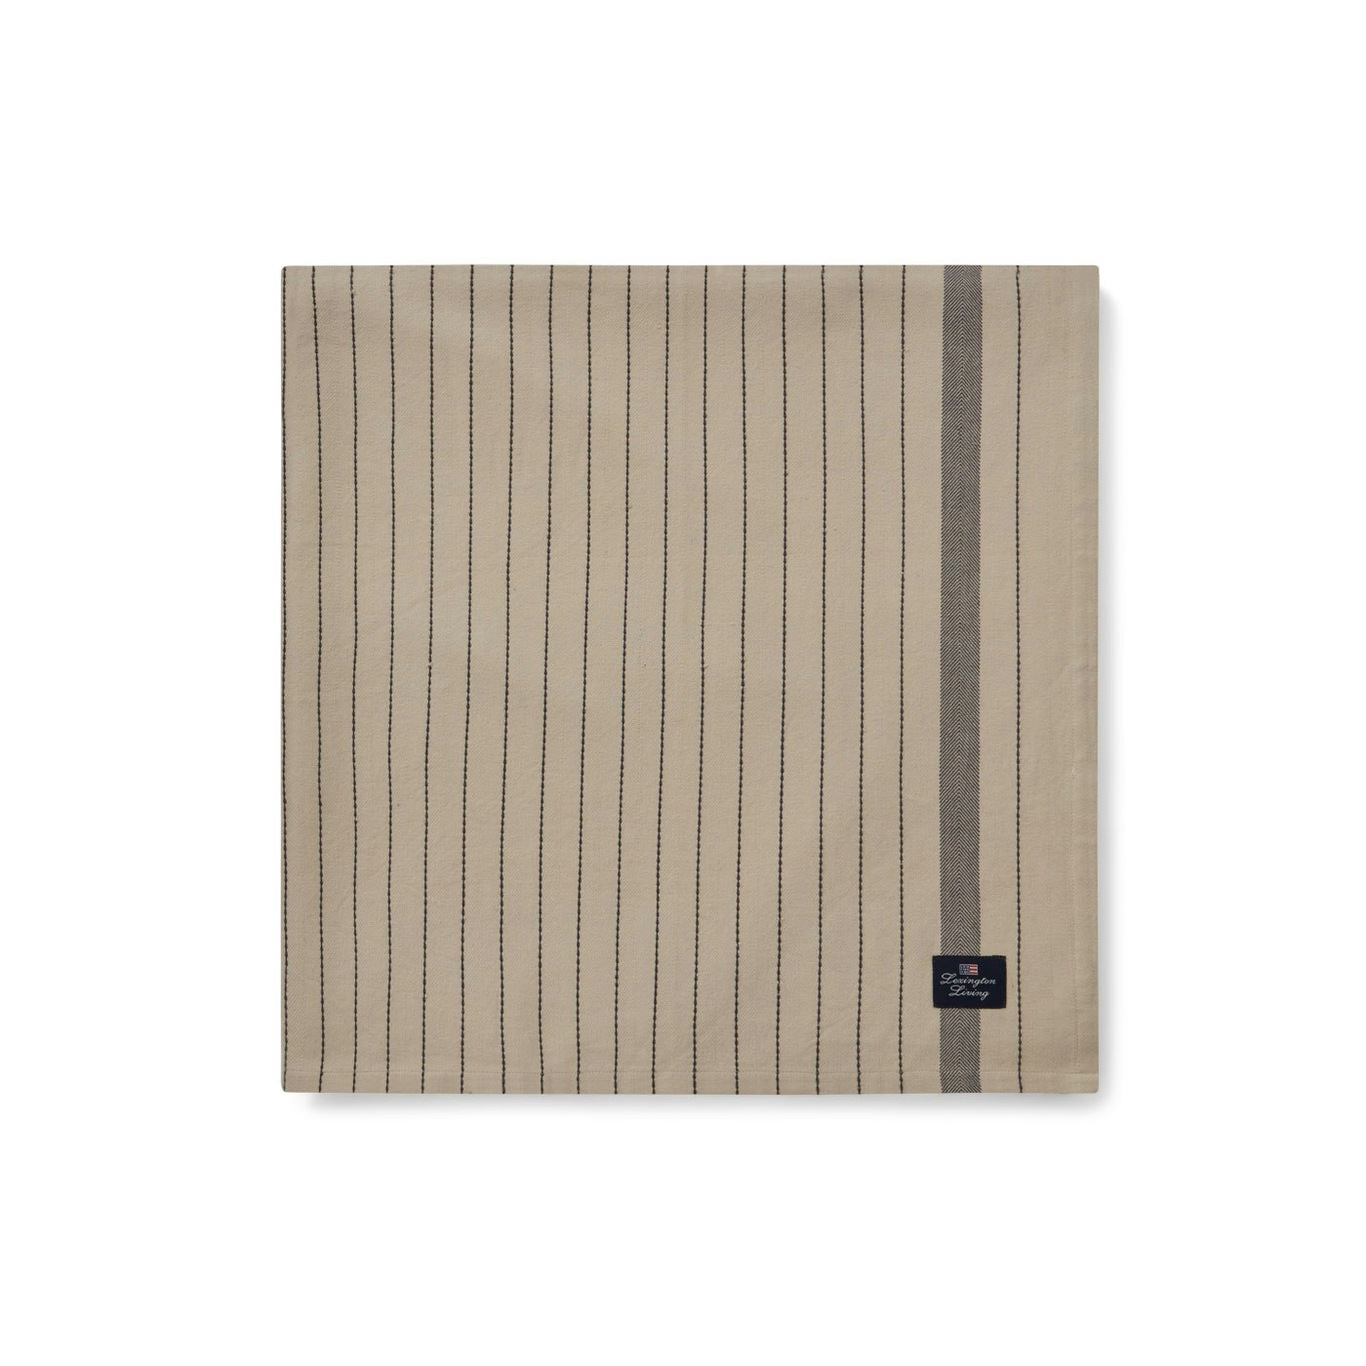 Striped Organic Cotton Tischdecke Beige/Dunkelgrau, 150x350 cm